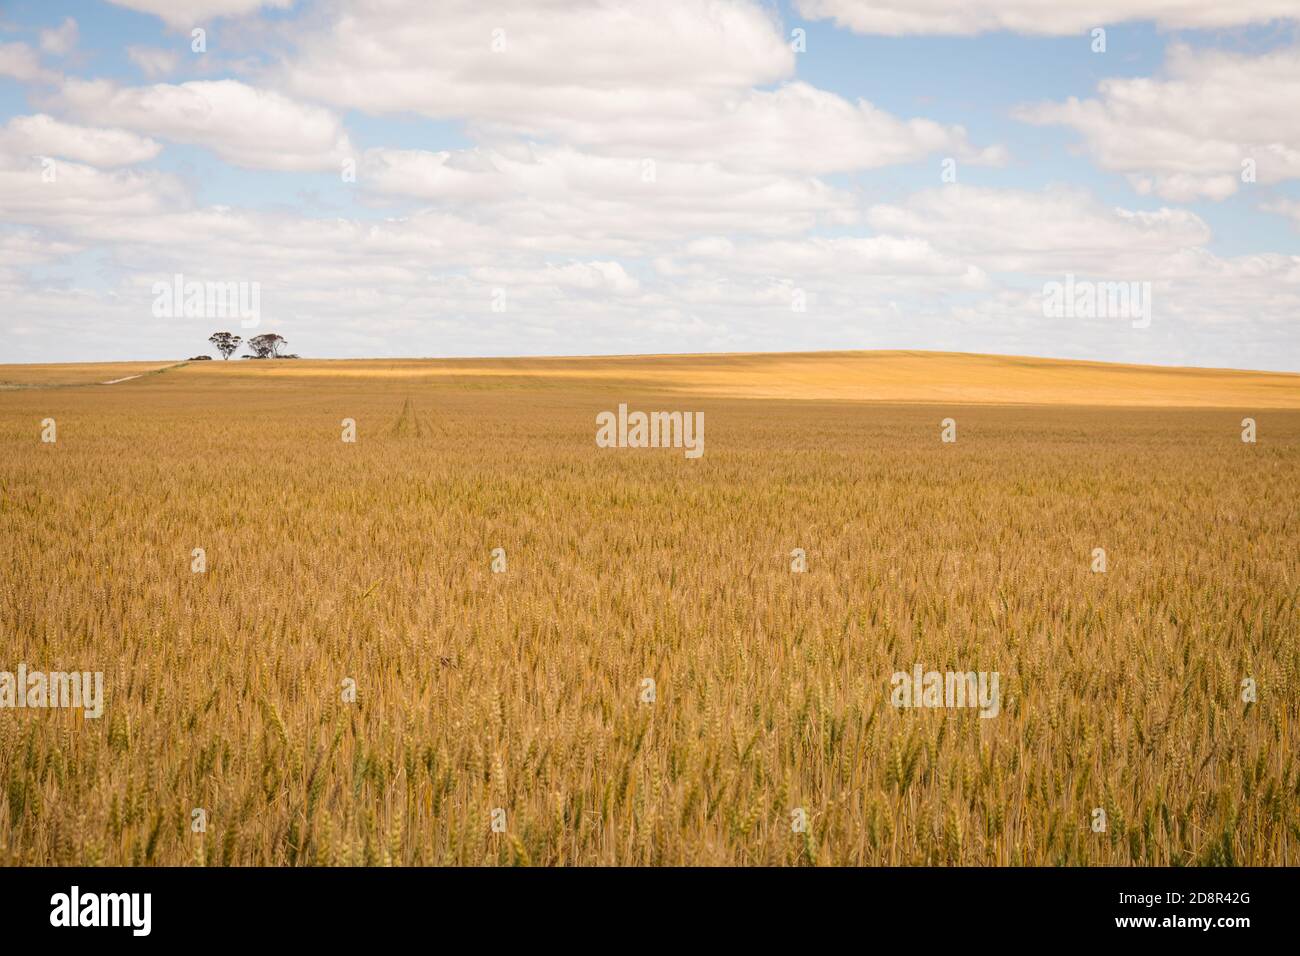 Des acres de blé sont presque prêts pour la récolte près de Wagin Australie occidentale Banque D'Images